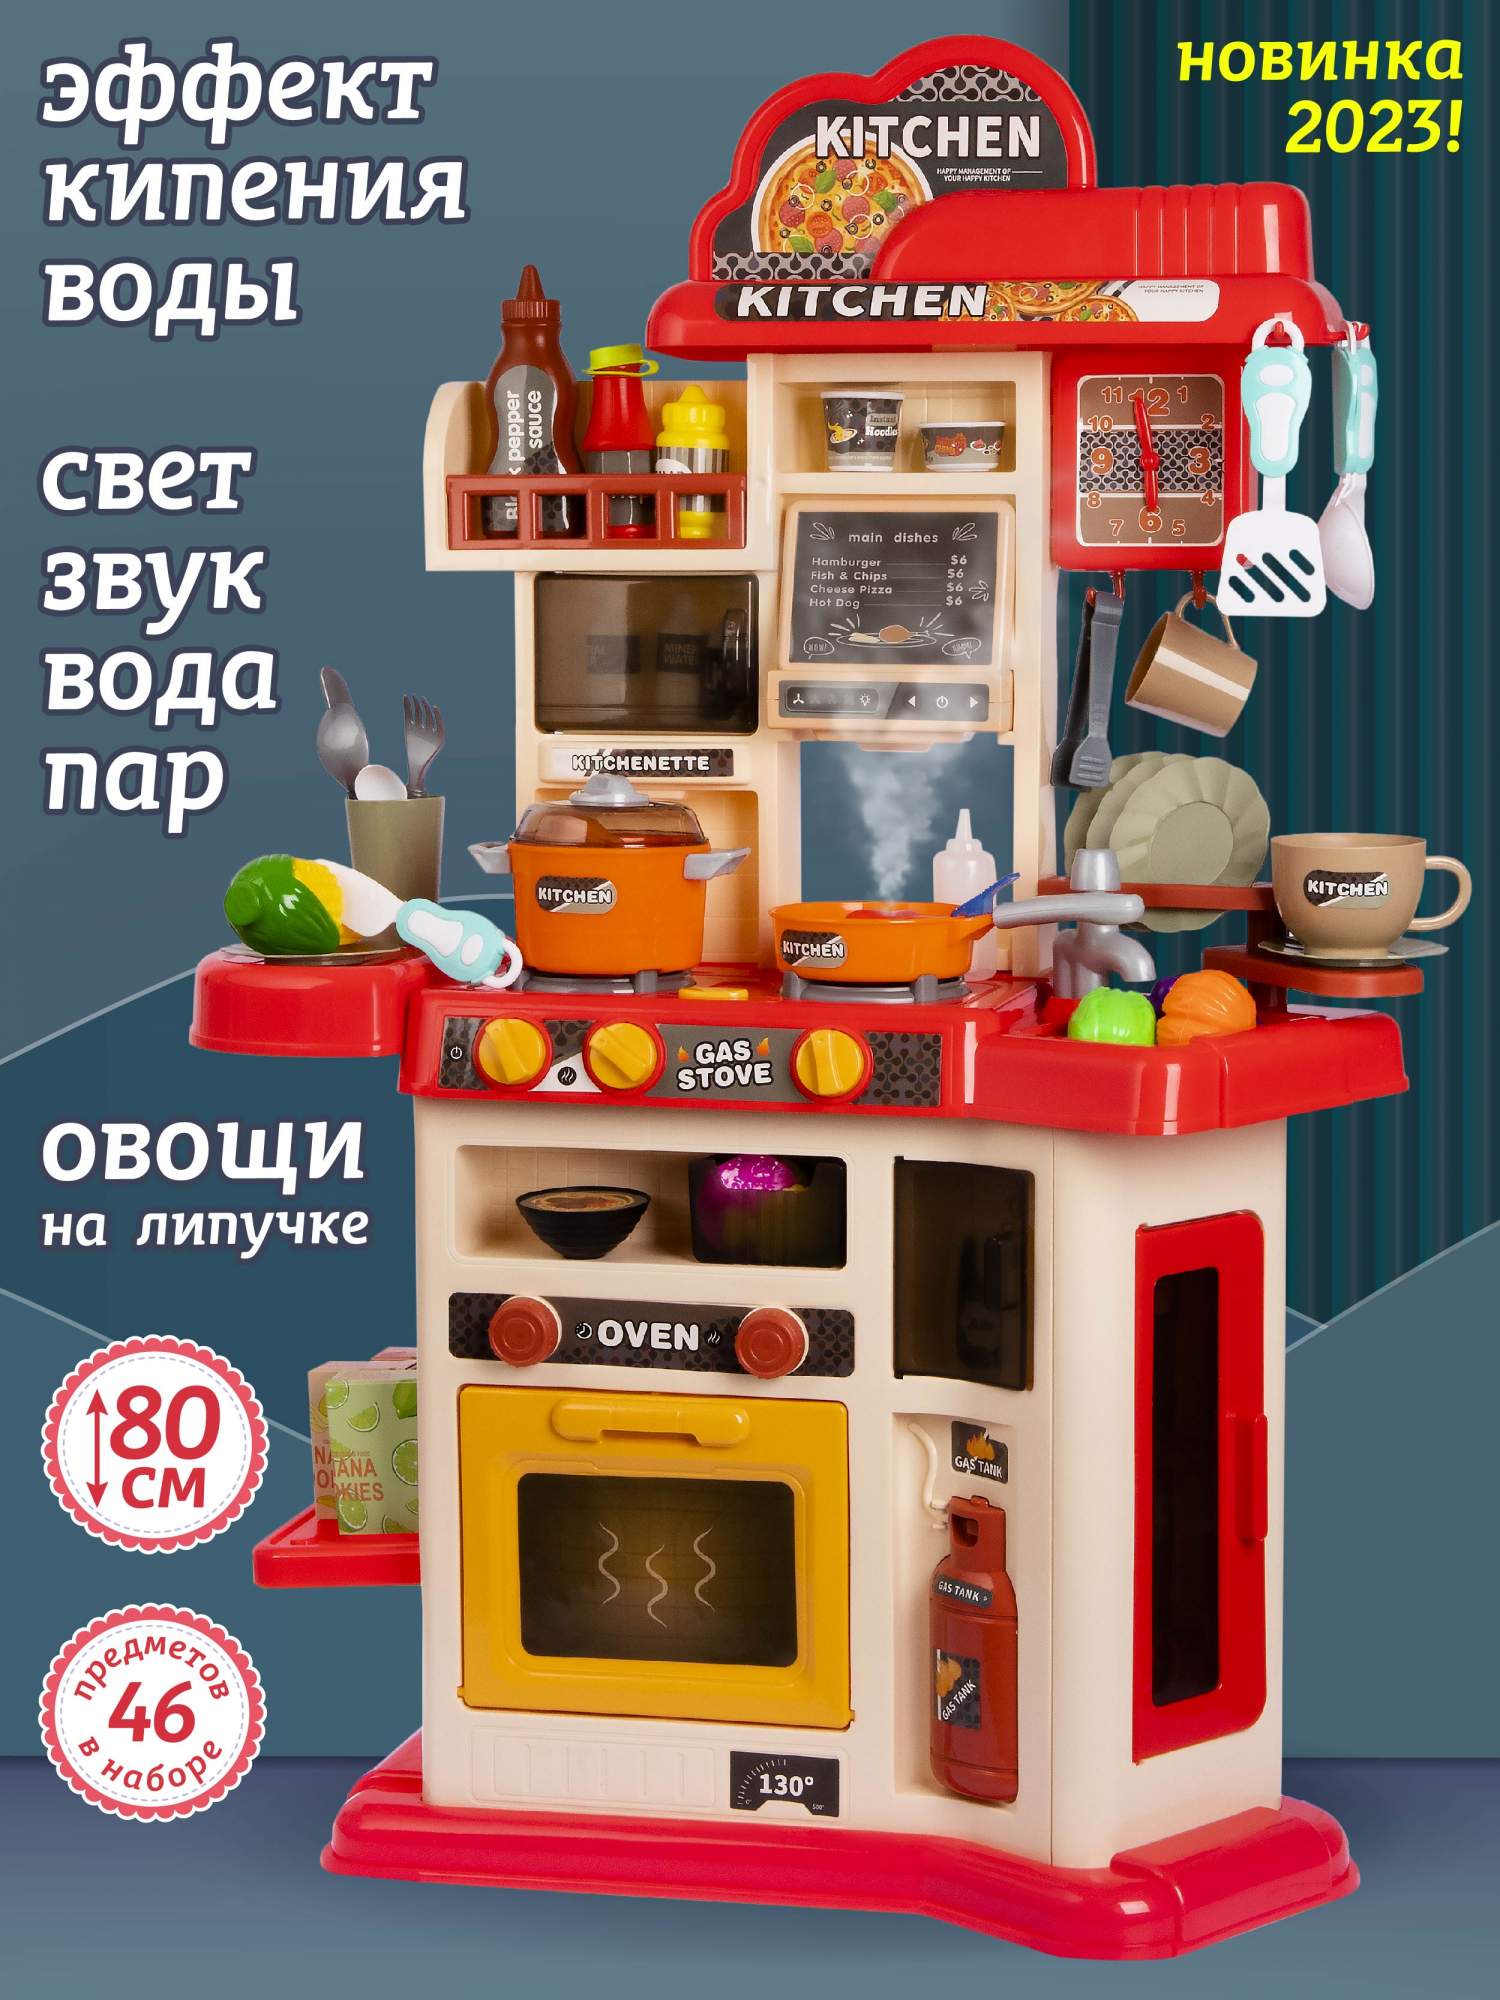 Детская кухня Amore Bello красный кухня с паром тм amore bello кран помпа с водой 25 предметов звук свет jb0211058